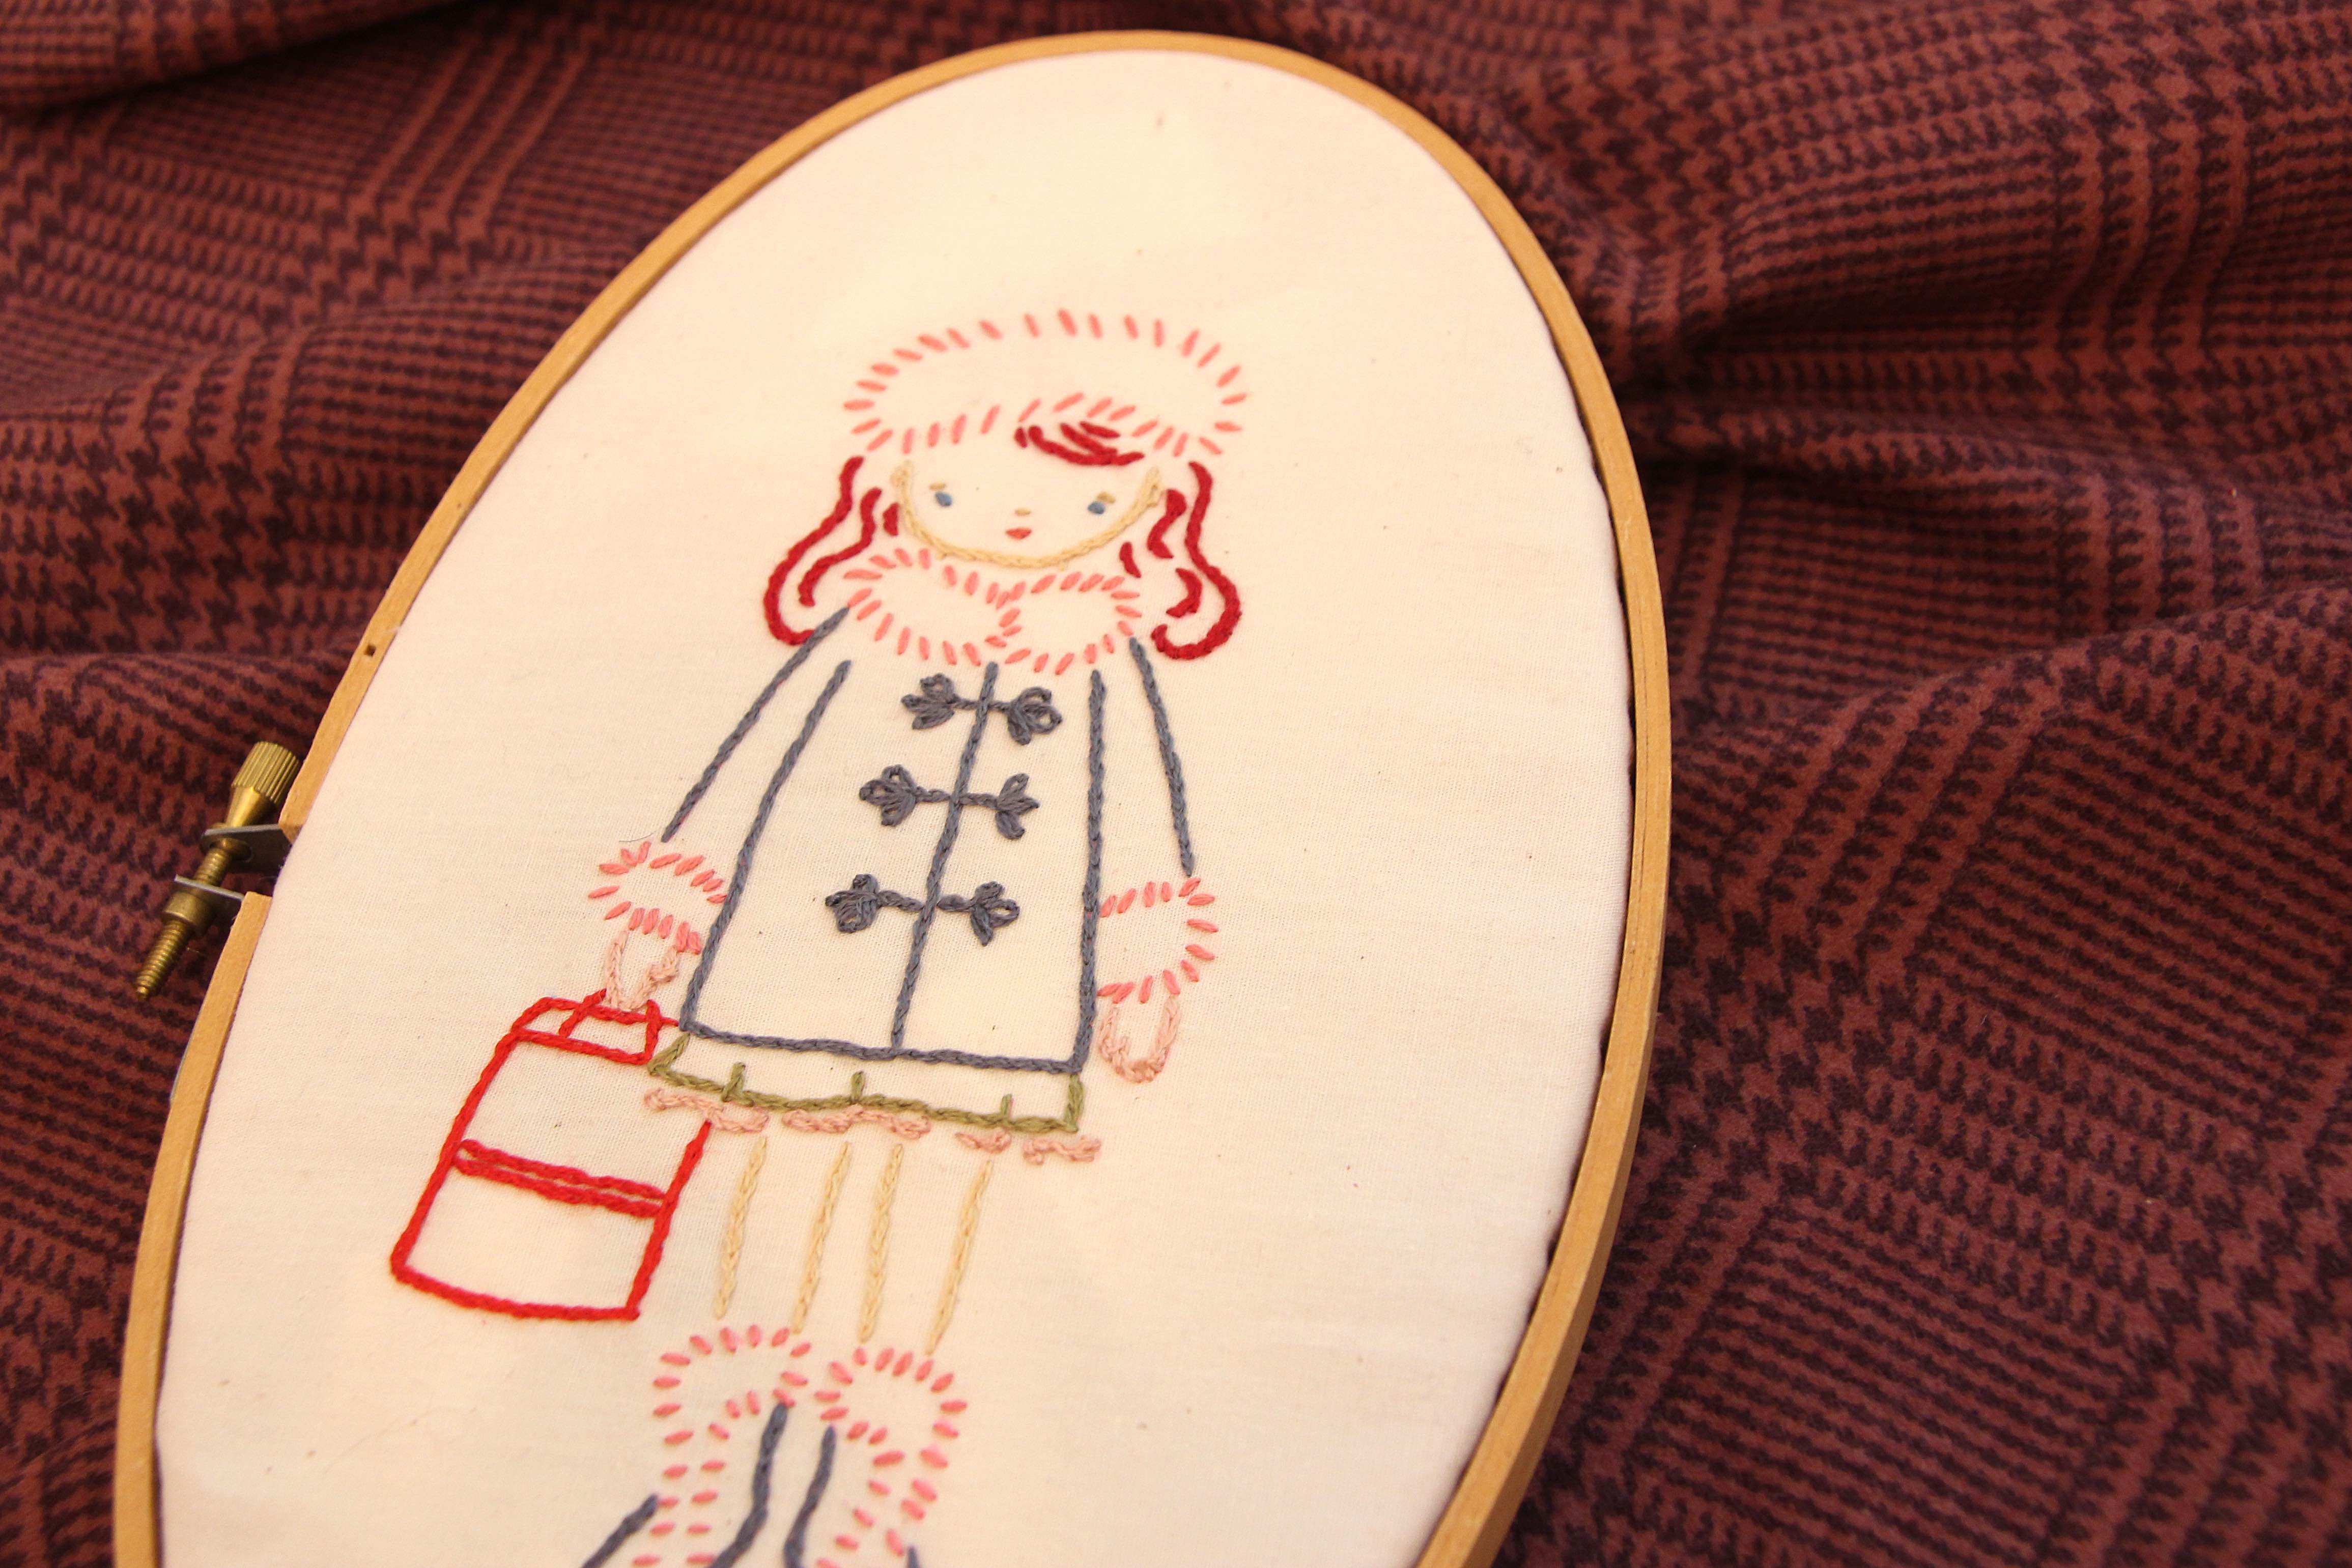 Wee Wonderkids Stitchettes embroidery patterns